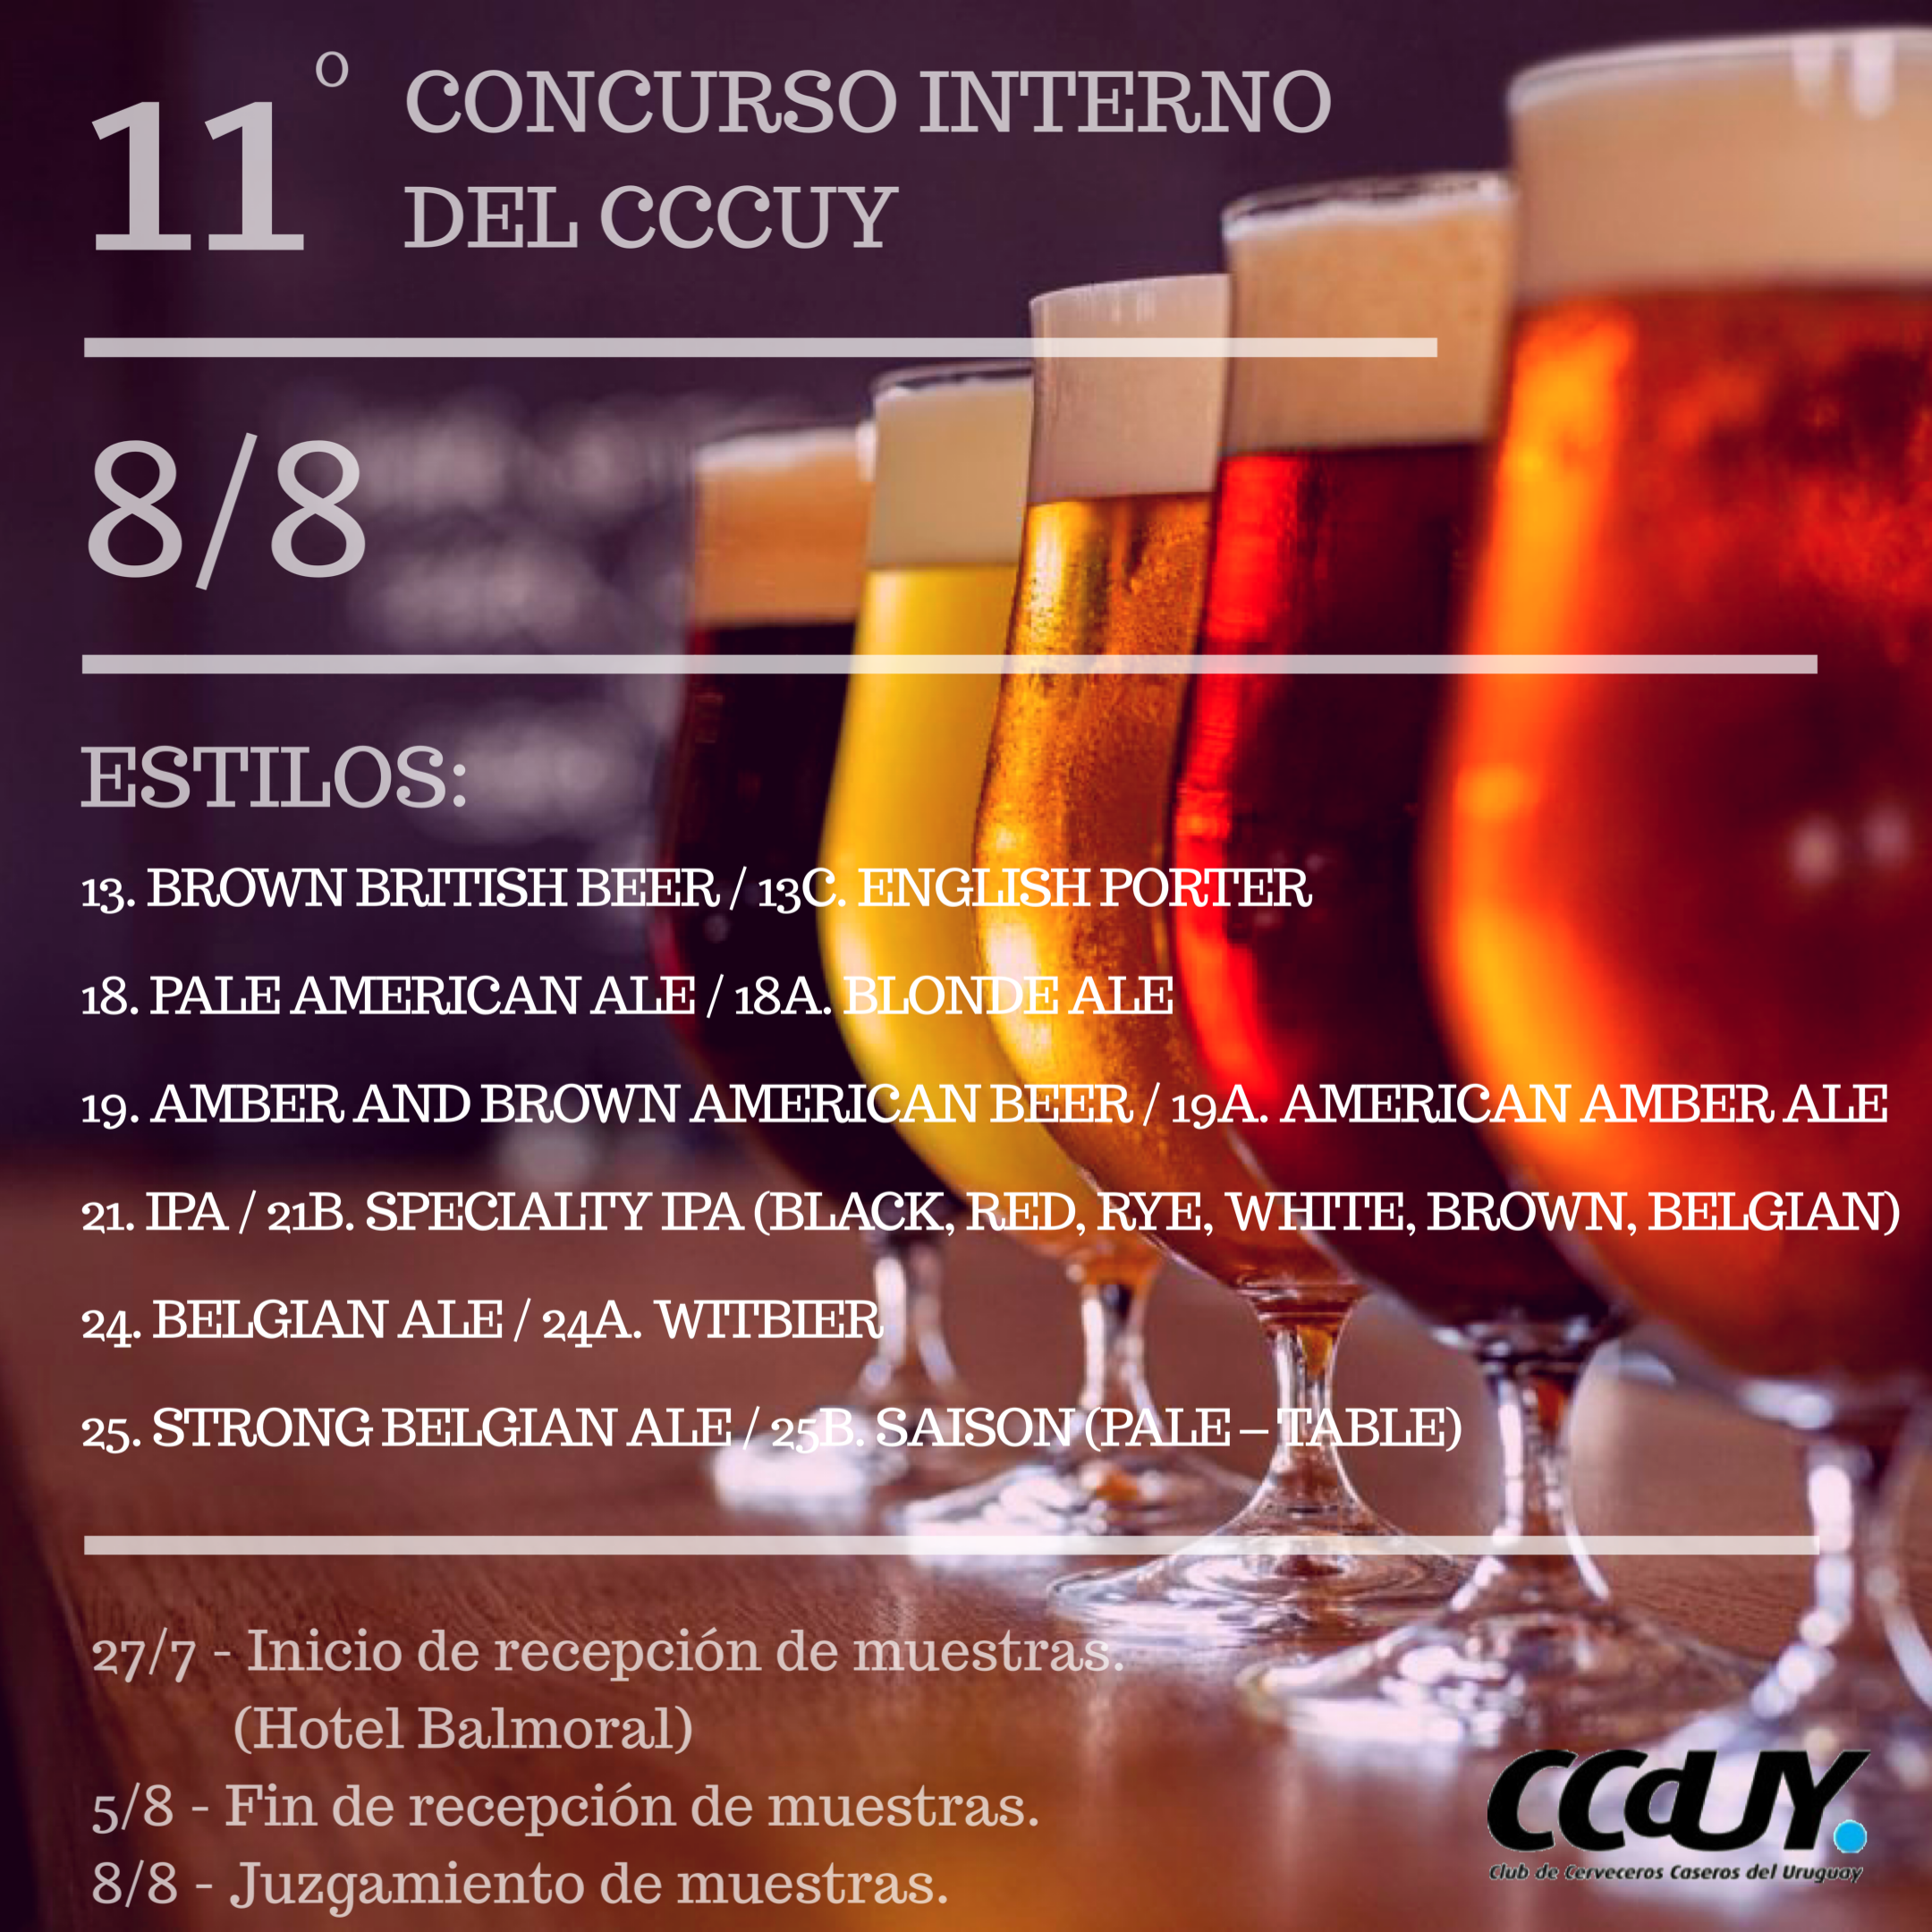 Uncategorized – Club de Cerveceros Caseros del Uruguay